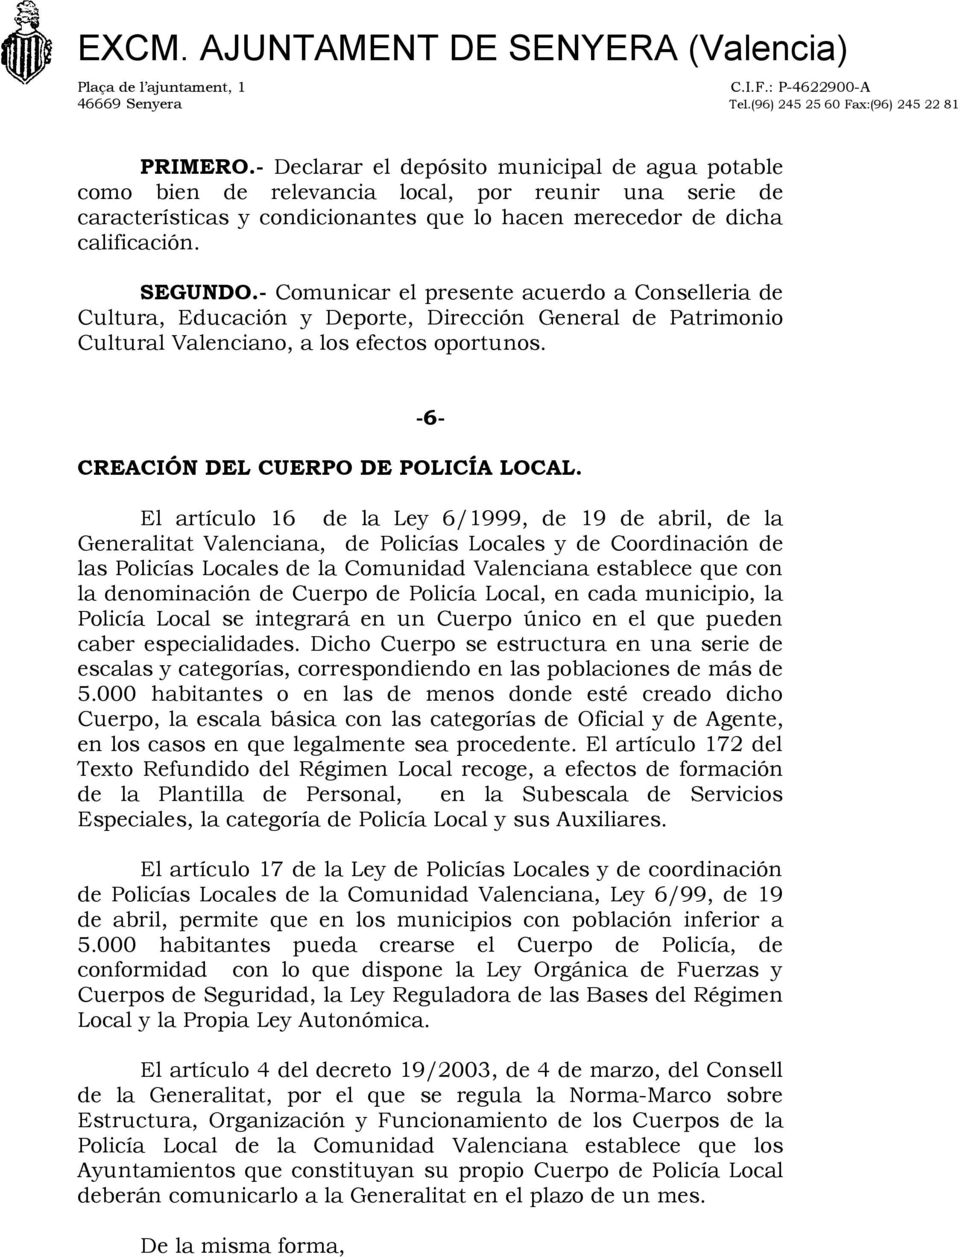 El artículo 16 de la Ley 6/1999, de 19 de abril, de la Generalitat Valenciana, de Policías Locales y de Coordinación de las Policías Locales de la Comunidad Valenciana establece que con la